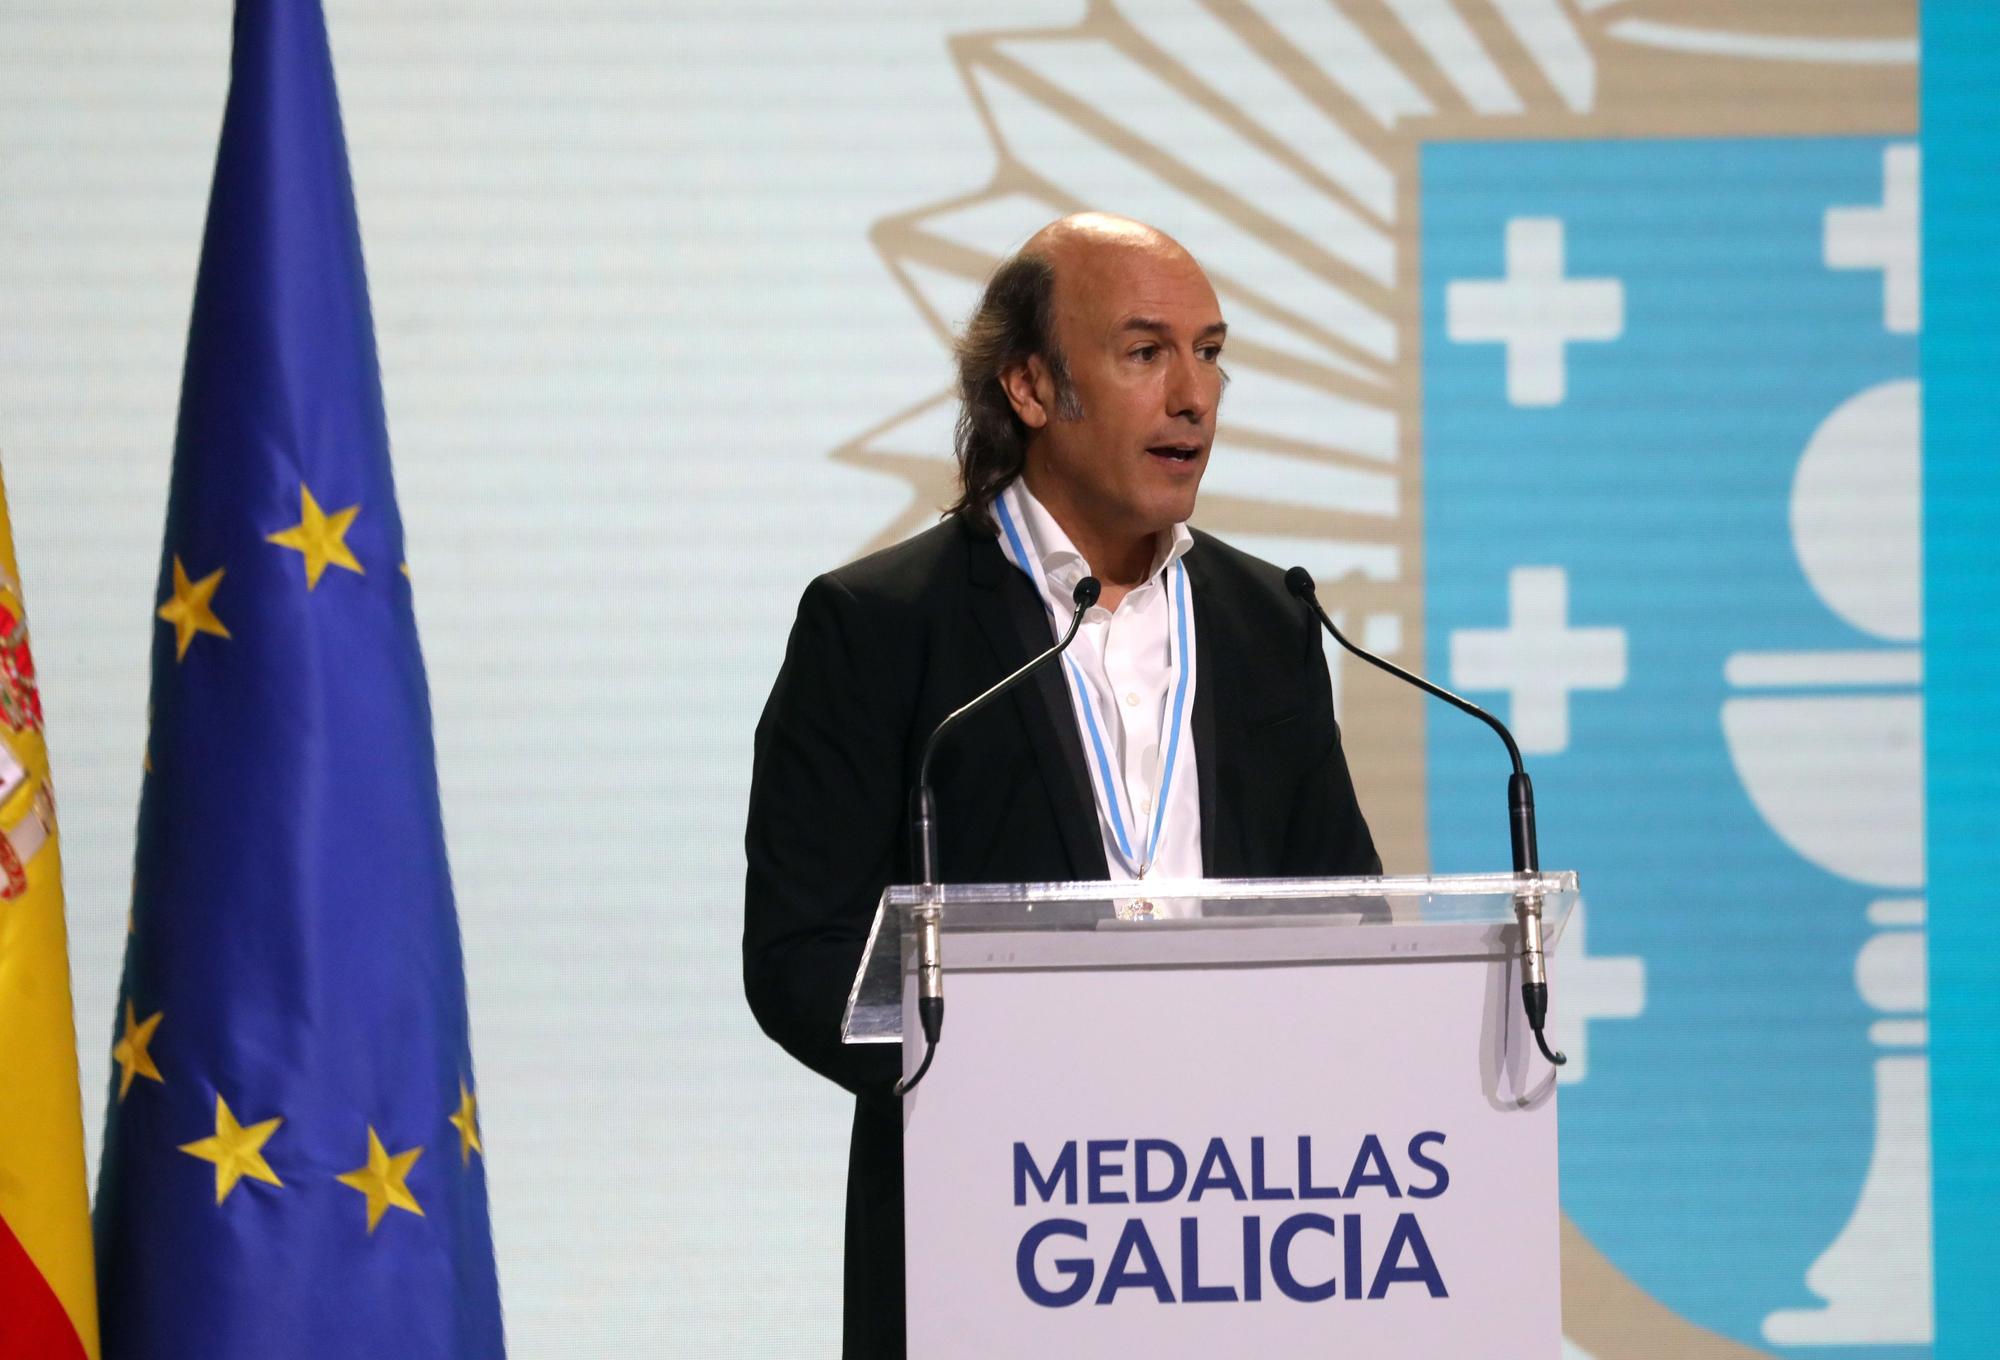 Día de Galicia: entrega de medallas de oro a Carlos Núñez, Luz Casal y Juan Pardo